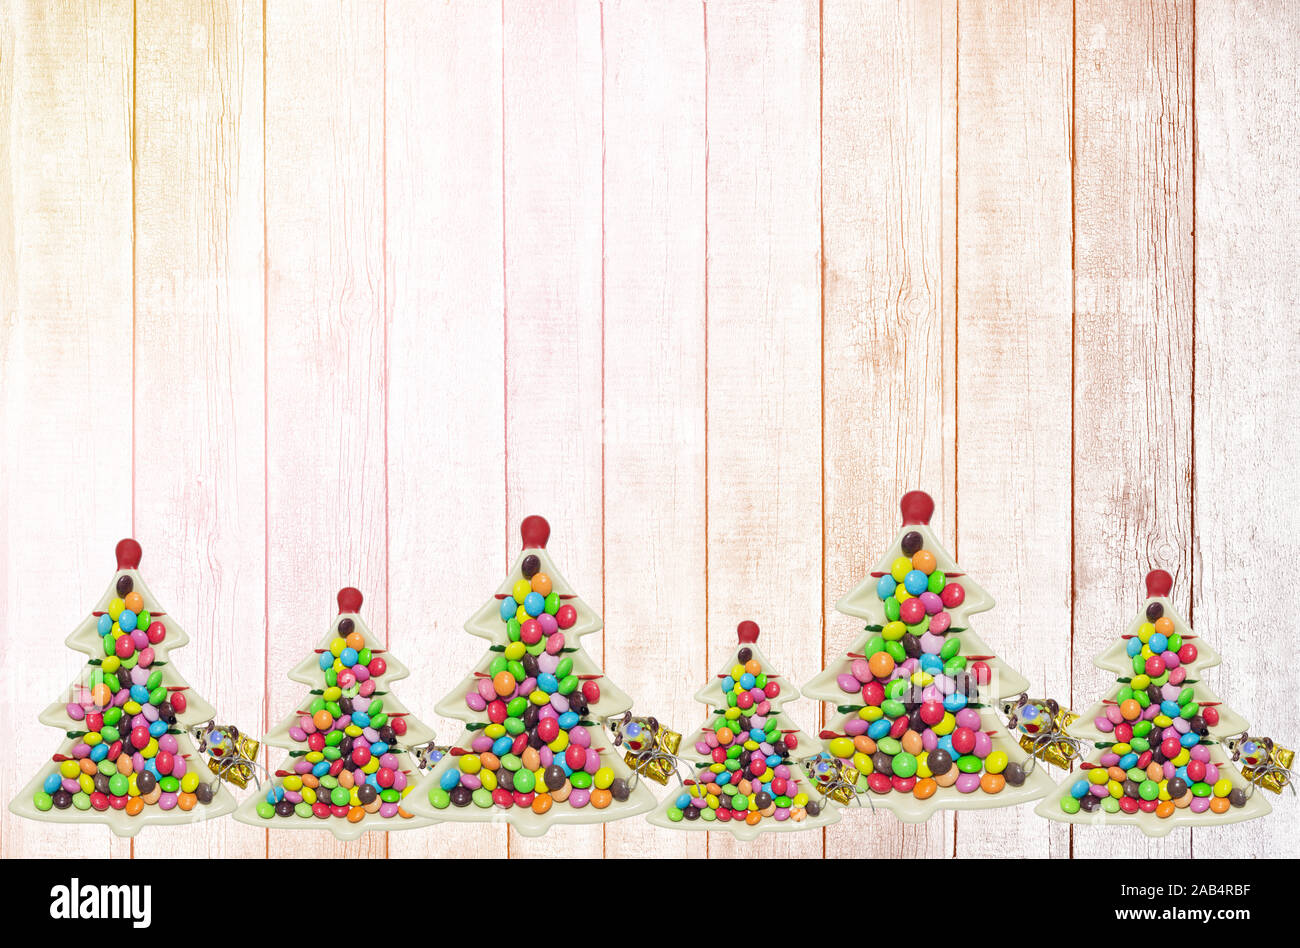 Des assiettes en forme d'arbres de Noël avec des bretzels et des bonbons décorent le fond en bois. Jouet en verre amusant et décorations d'arbre de Noël Banque D'Images